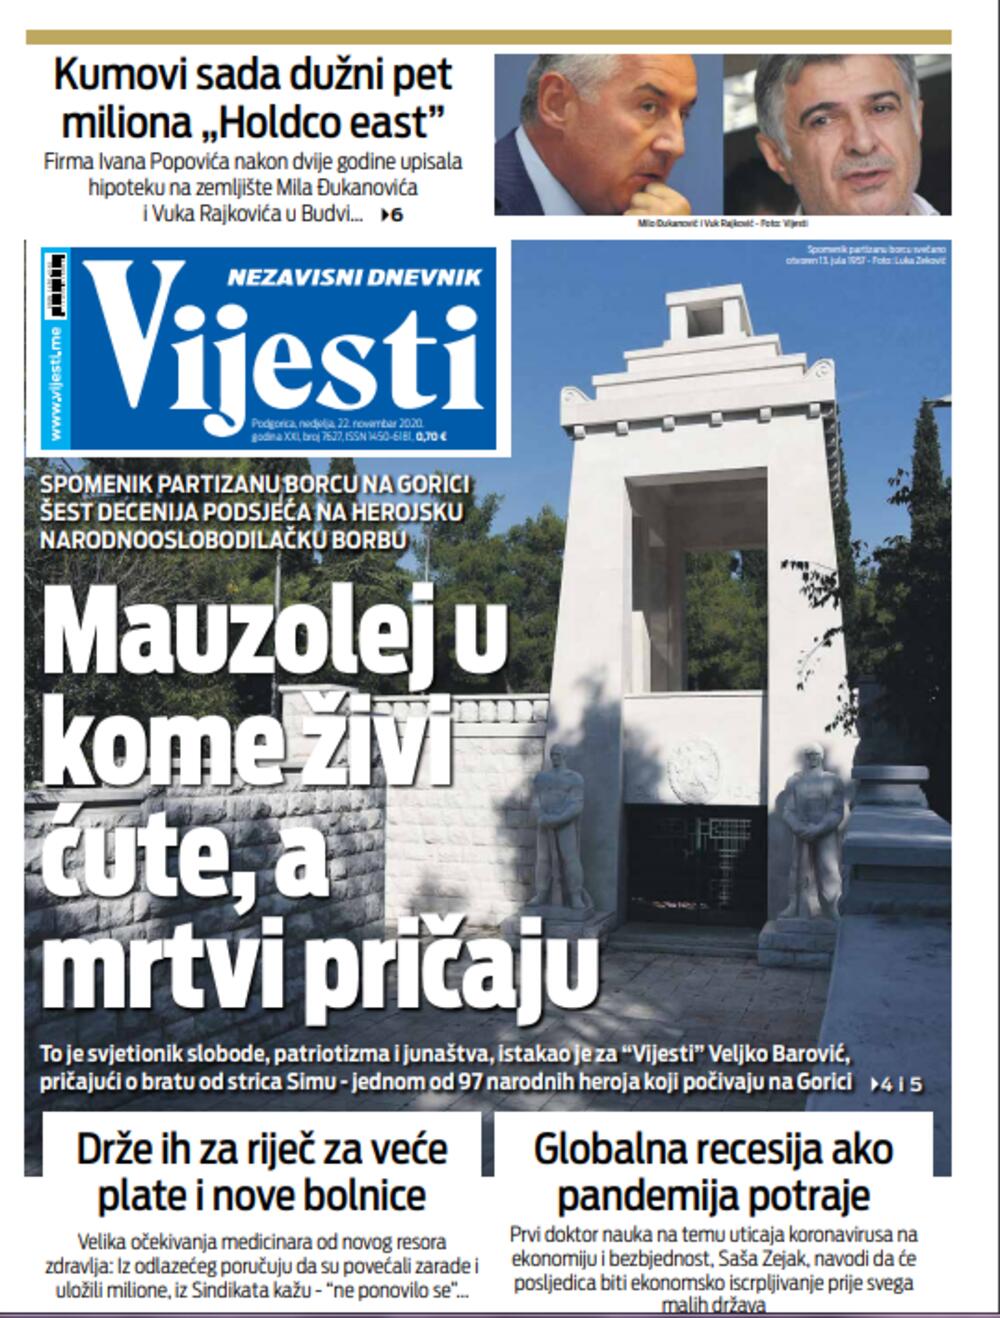 Naslovna strana "Vijesti" za 22. novembar, Foto: Vijesti